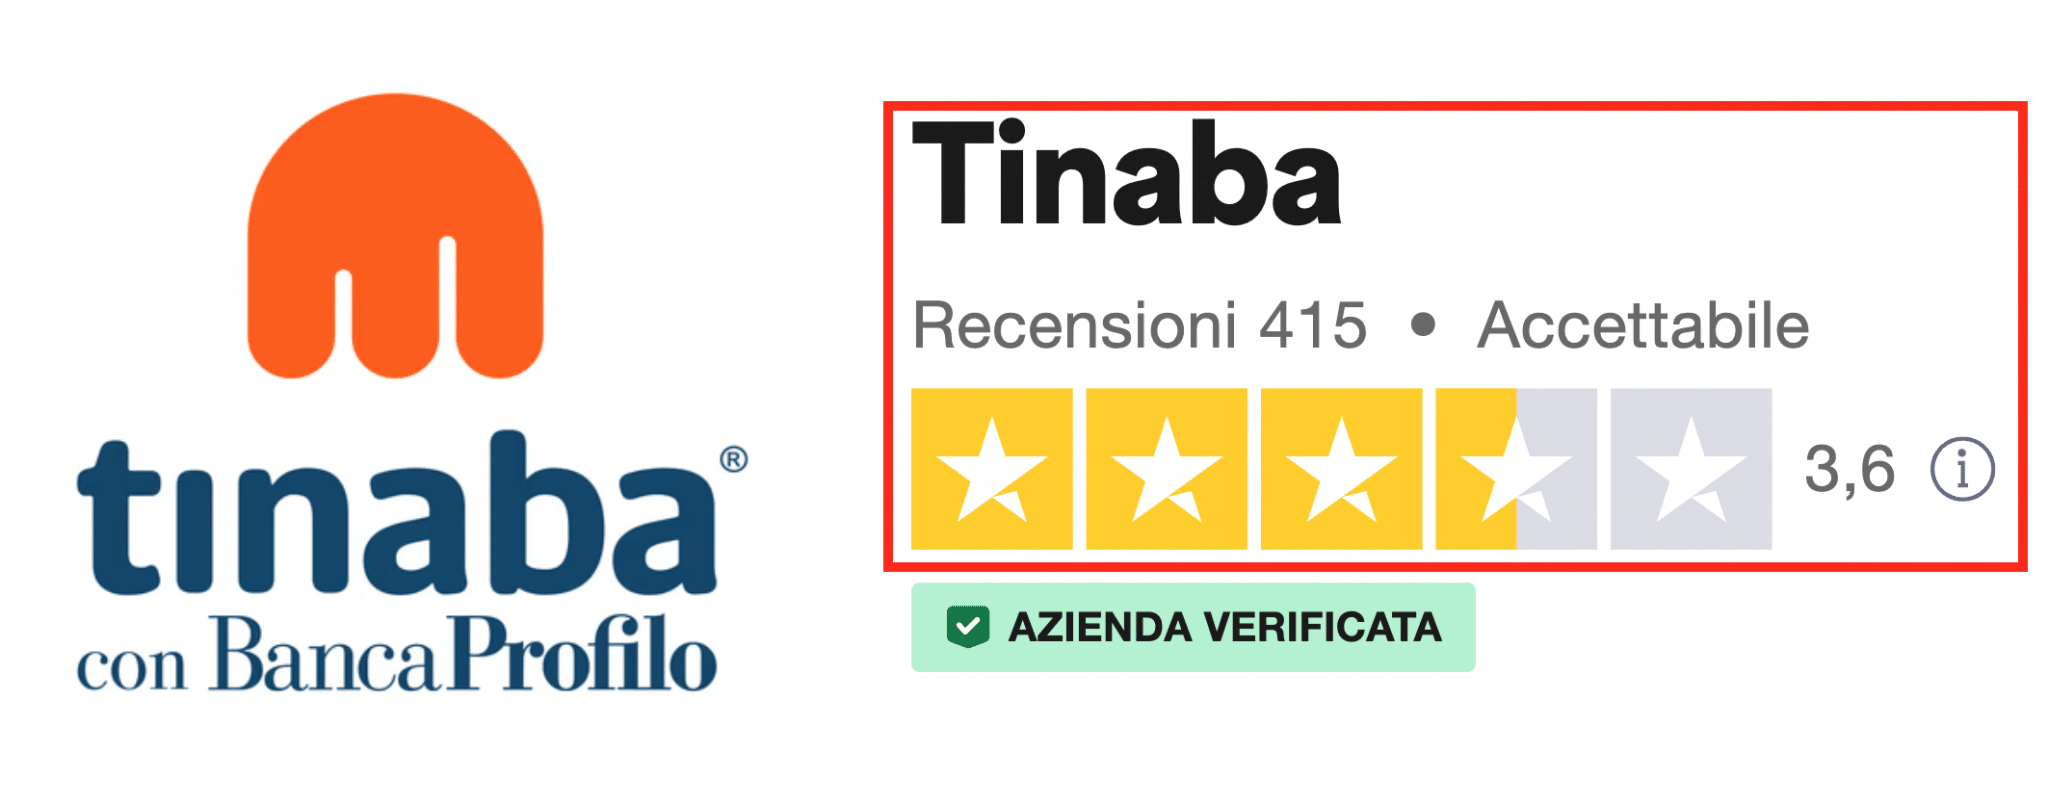 Tinaba è considerata accettabile dalla piattaforma di recensioni Trustpilot